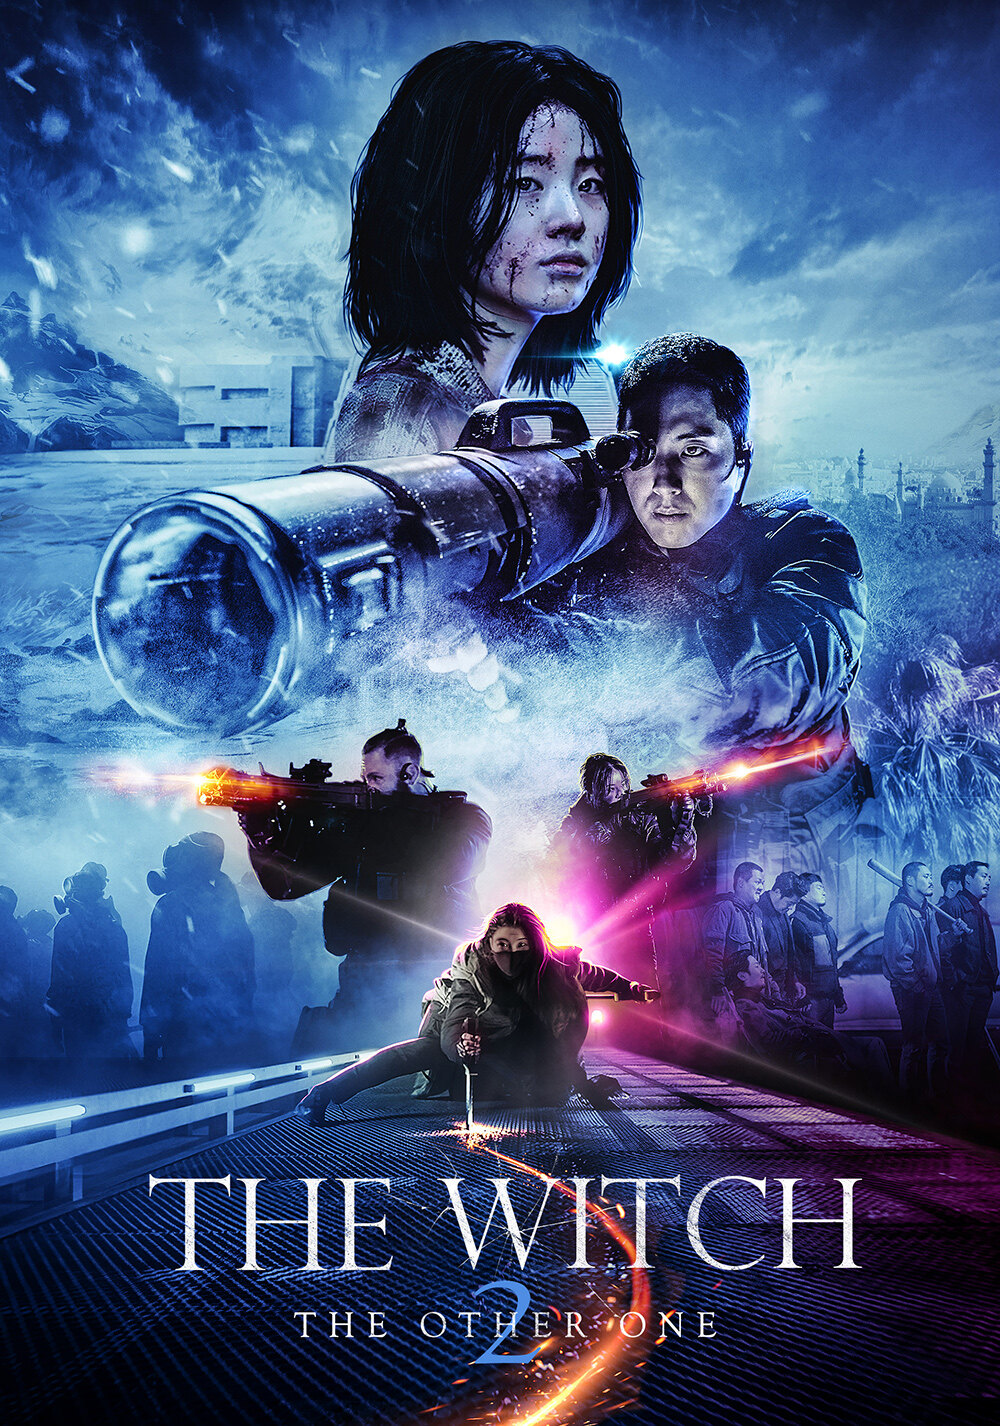 ดูหนังออนไลน์ฟรี The Witch Part 2 The Other One แม่มดมือสังหาร 2 2022 พากย์ไทย